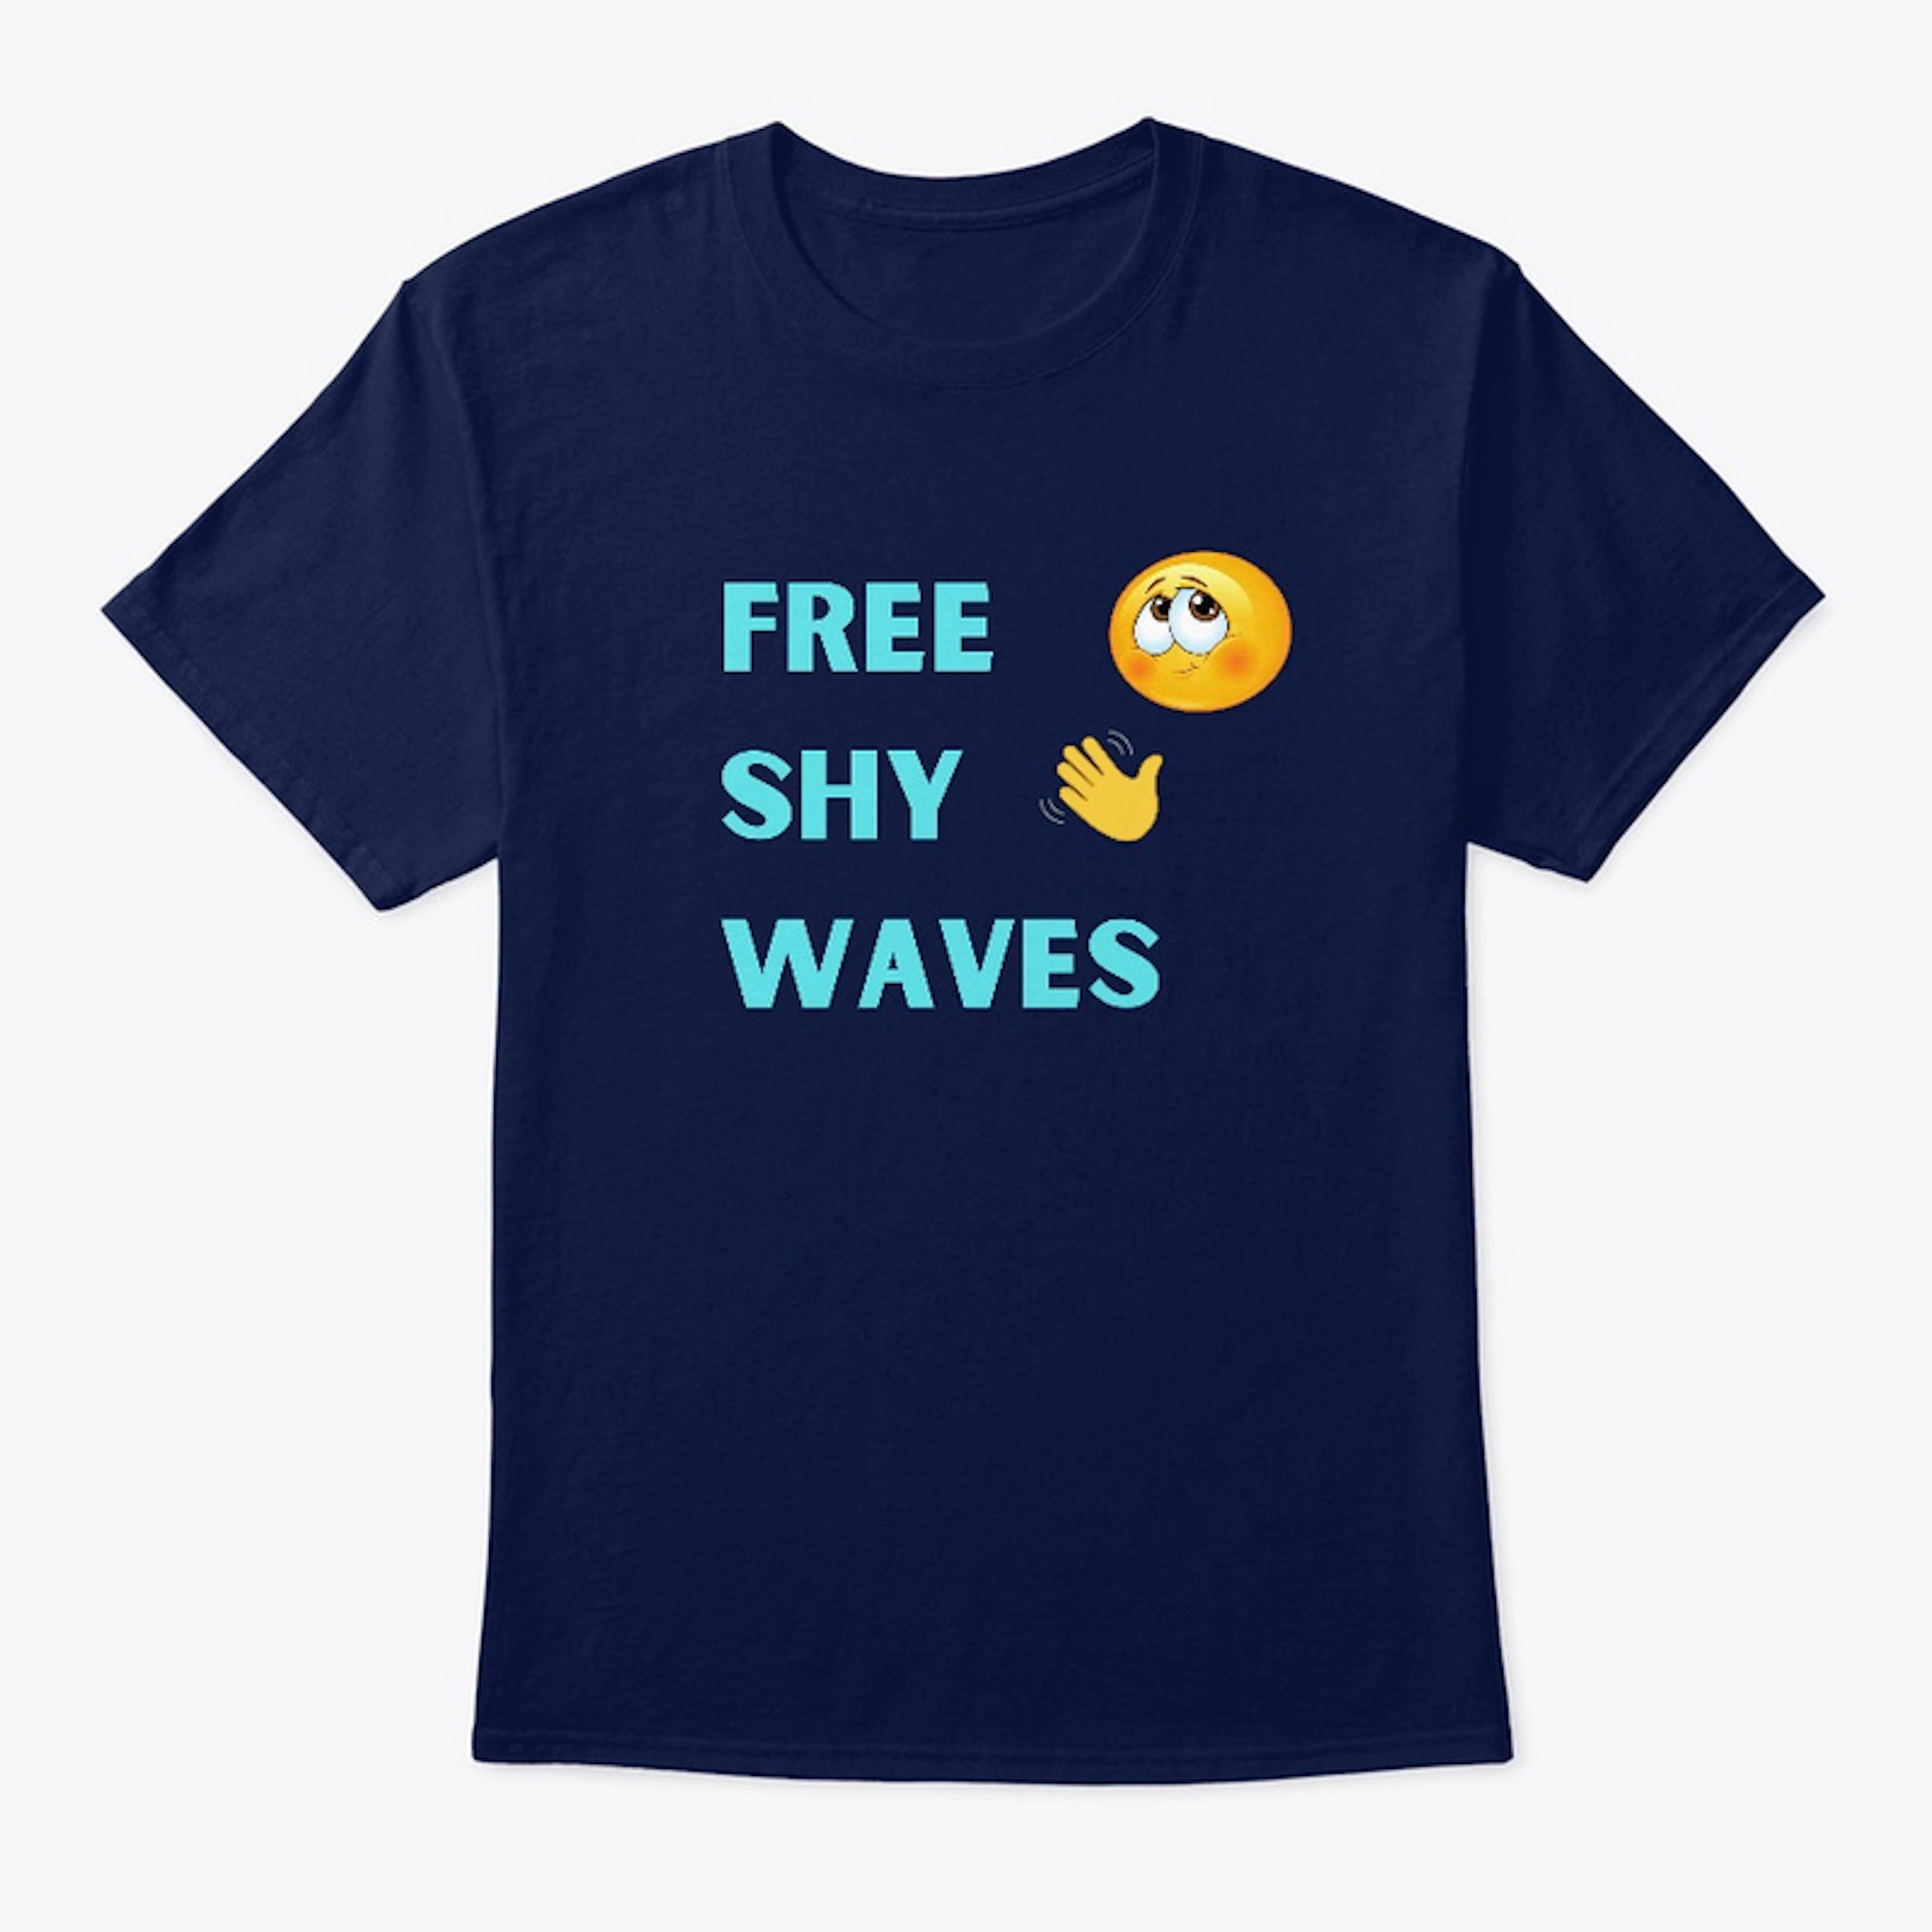 Free Shy Waves Shirt